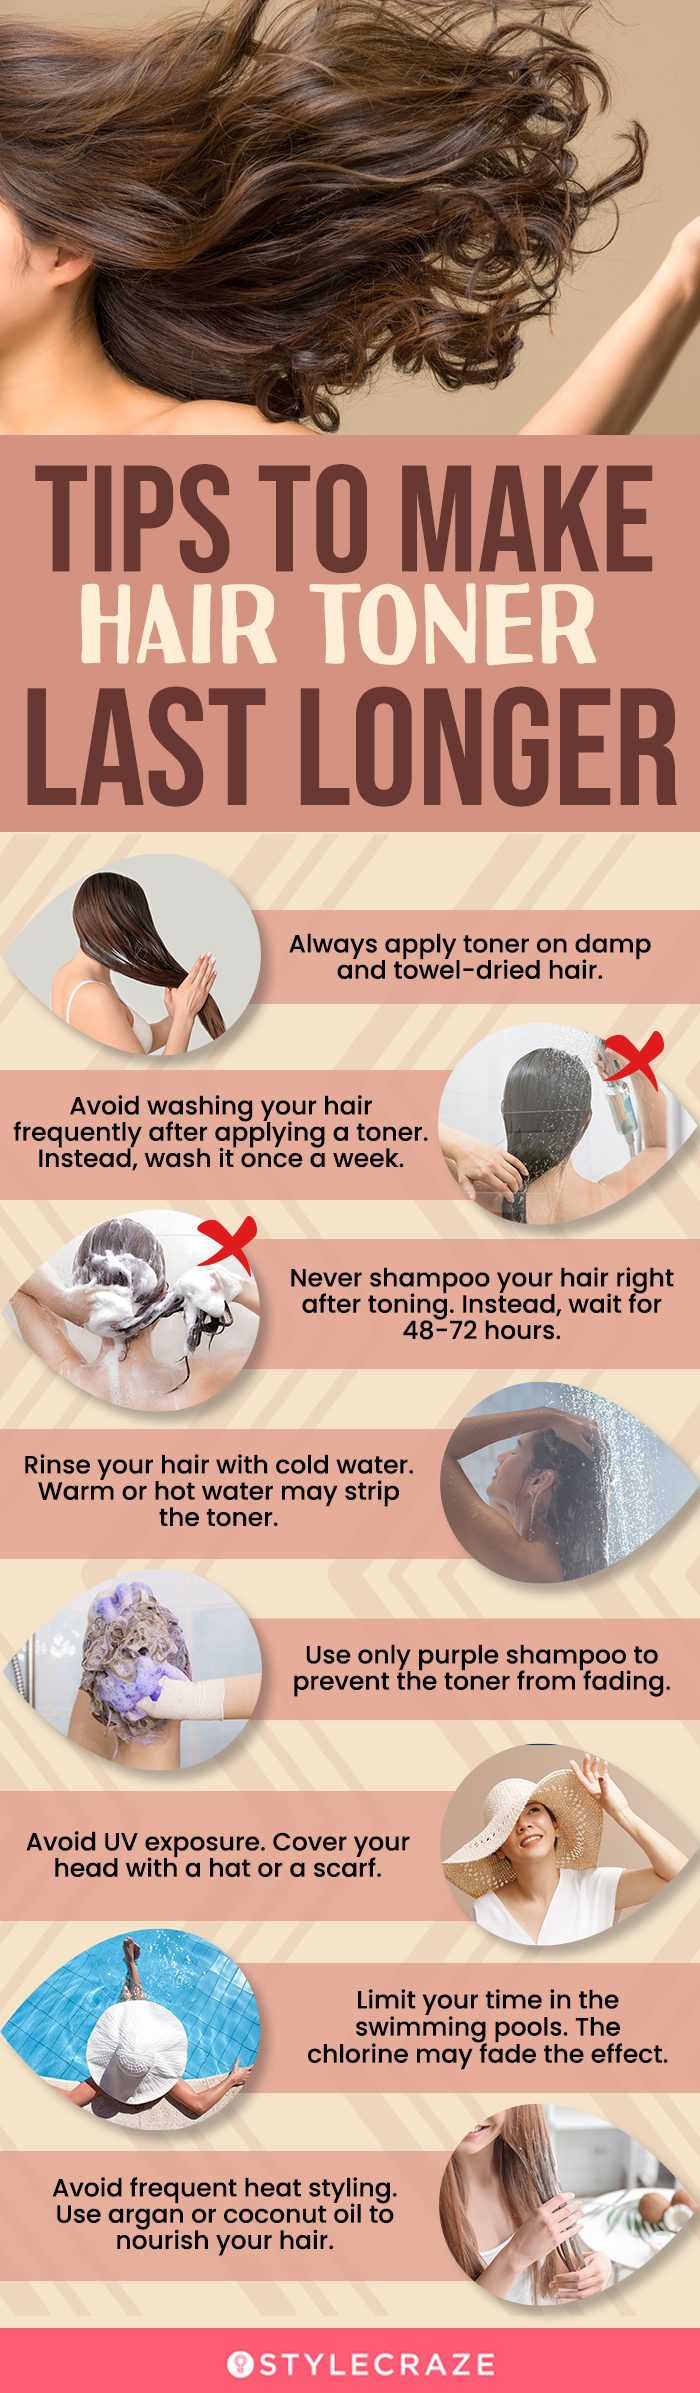 tips to make hair toner last longer (infographic)